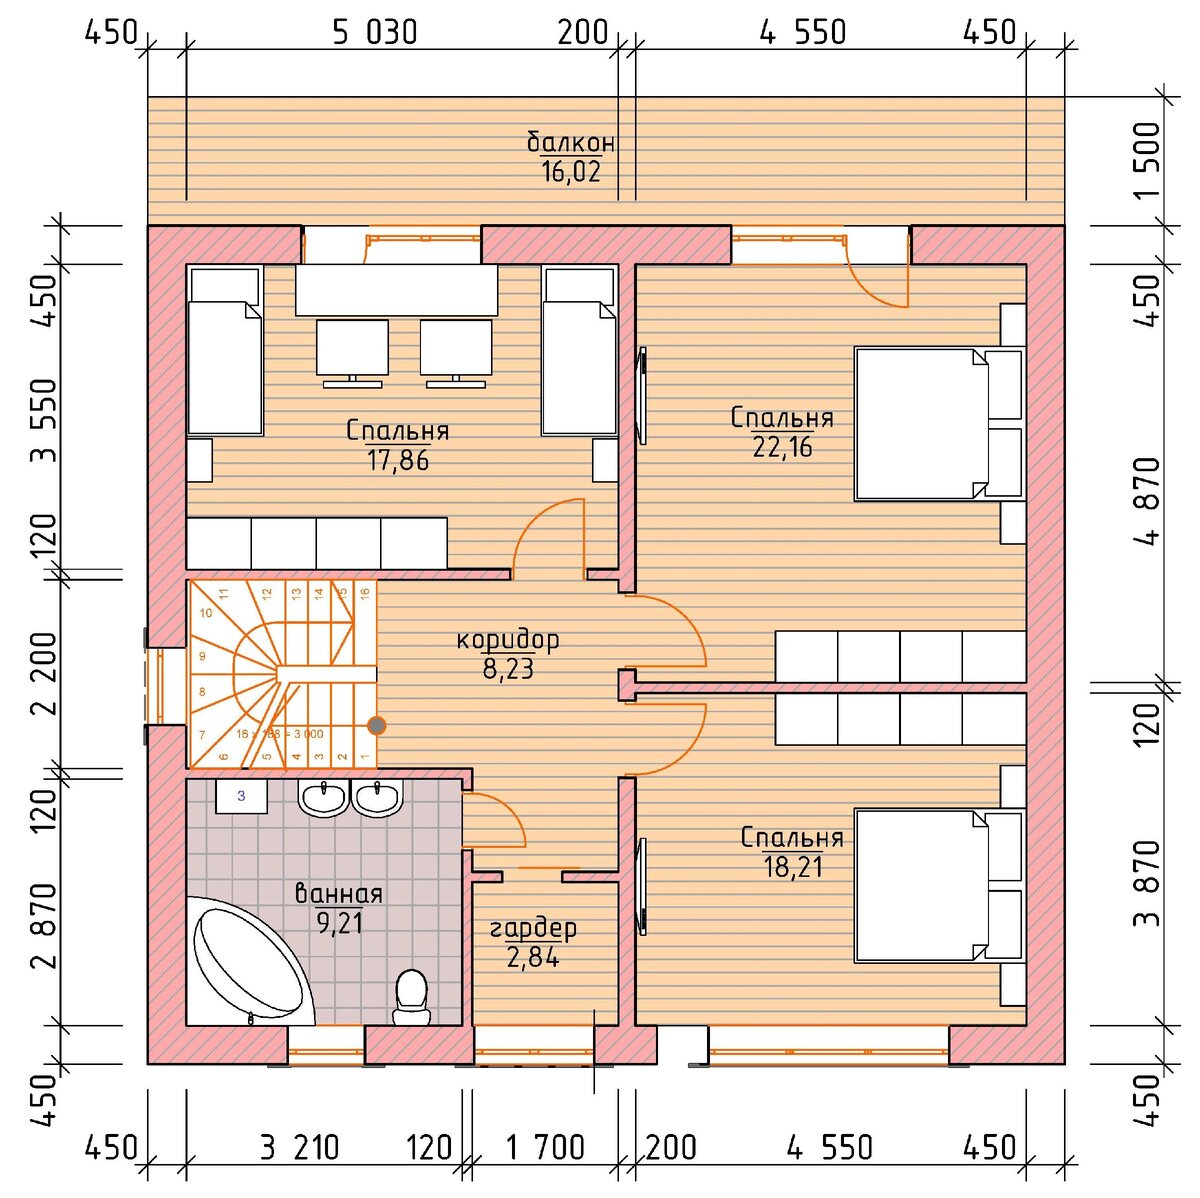 Просторный двухэтажный дом для семьи до 8 человек на 170 м² из кирпича ??